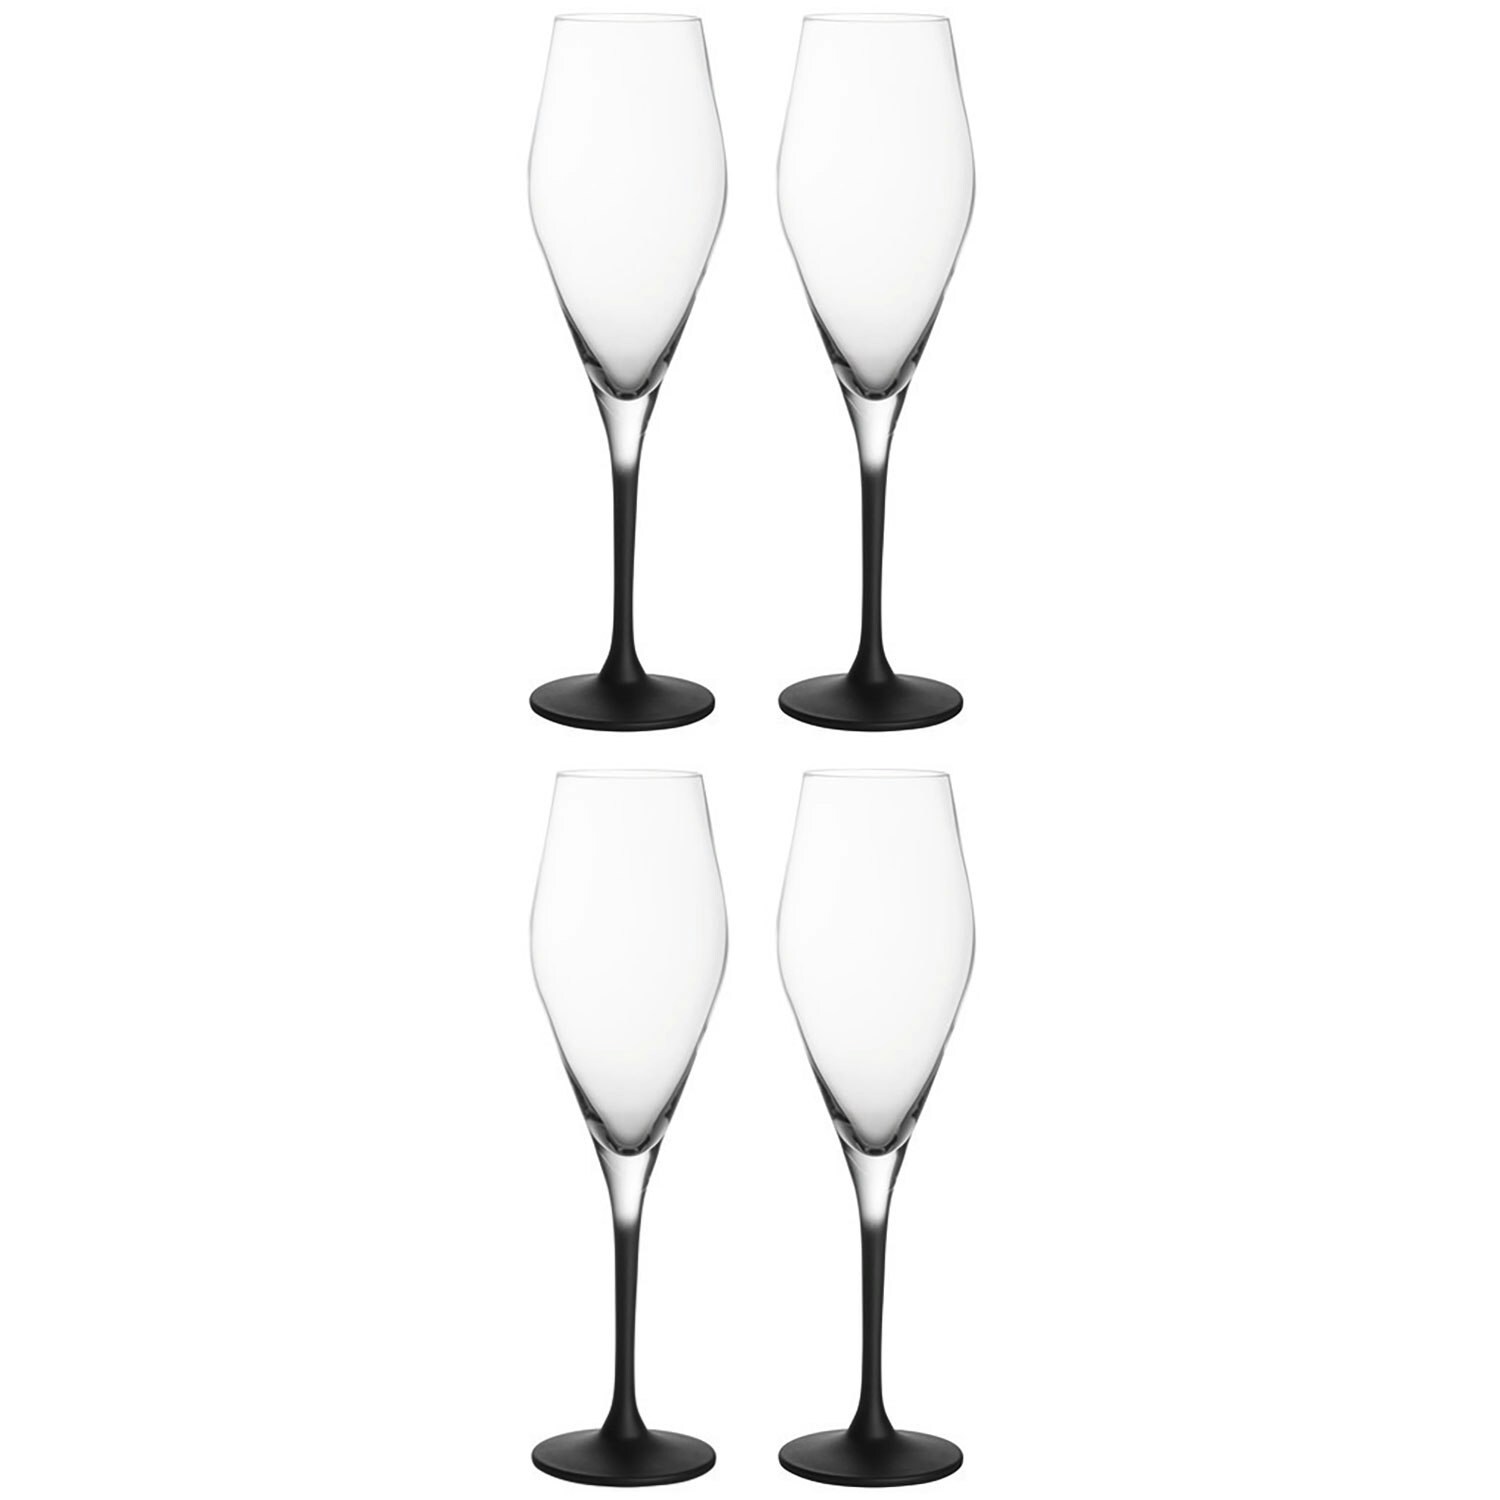 https://royaldesign.com/image/2/villeroy-boch-manufacture-rock-champagne-glass-26-cl-4-pack-0